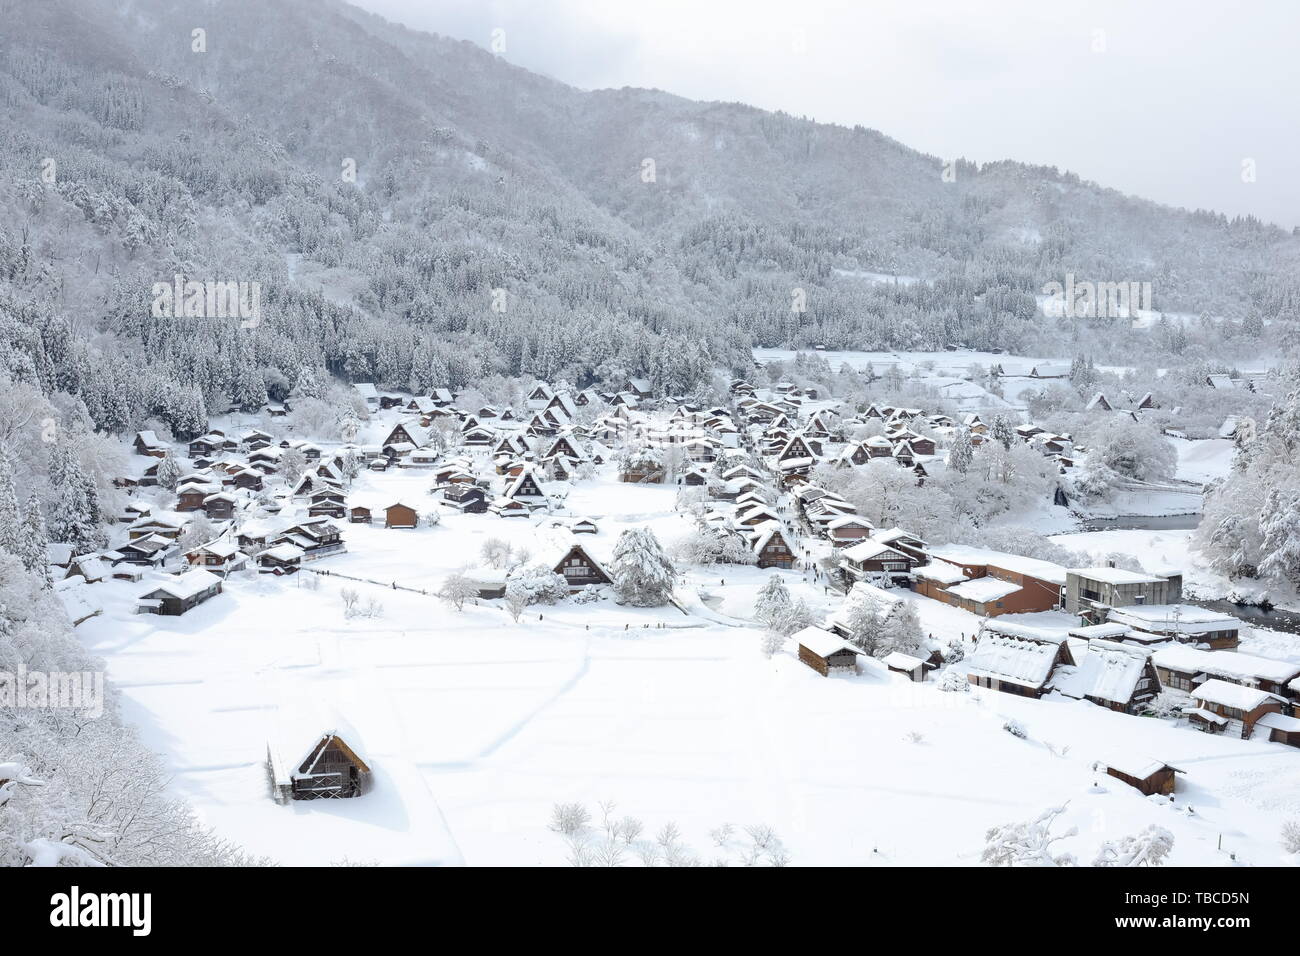 Shirakawago aldea en invierno, la nieve Foto de stock